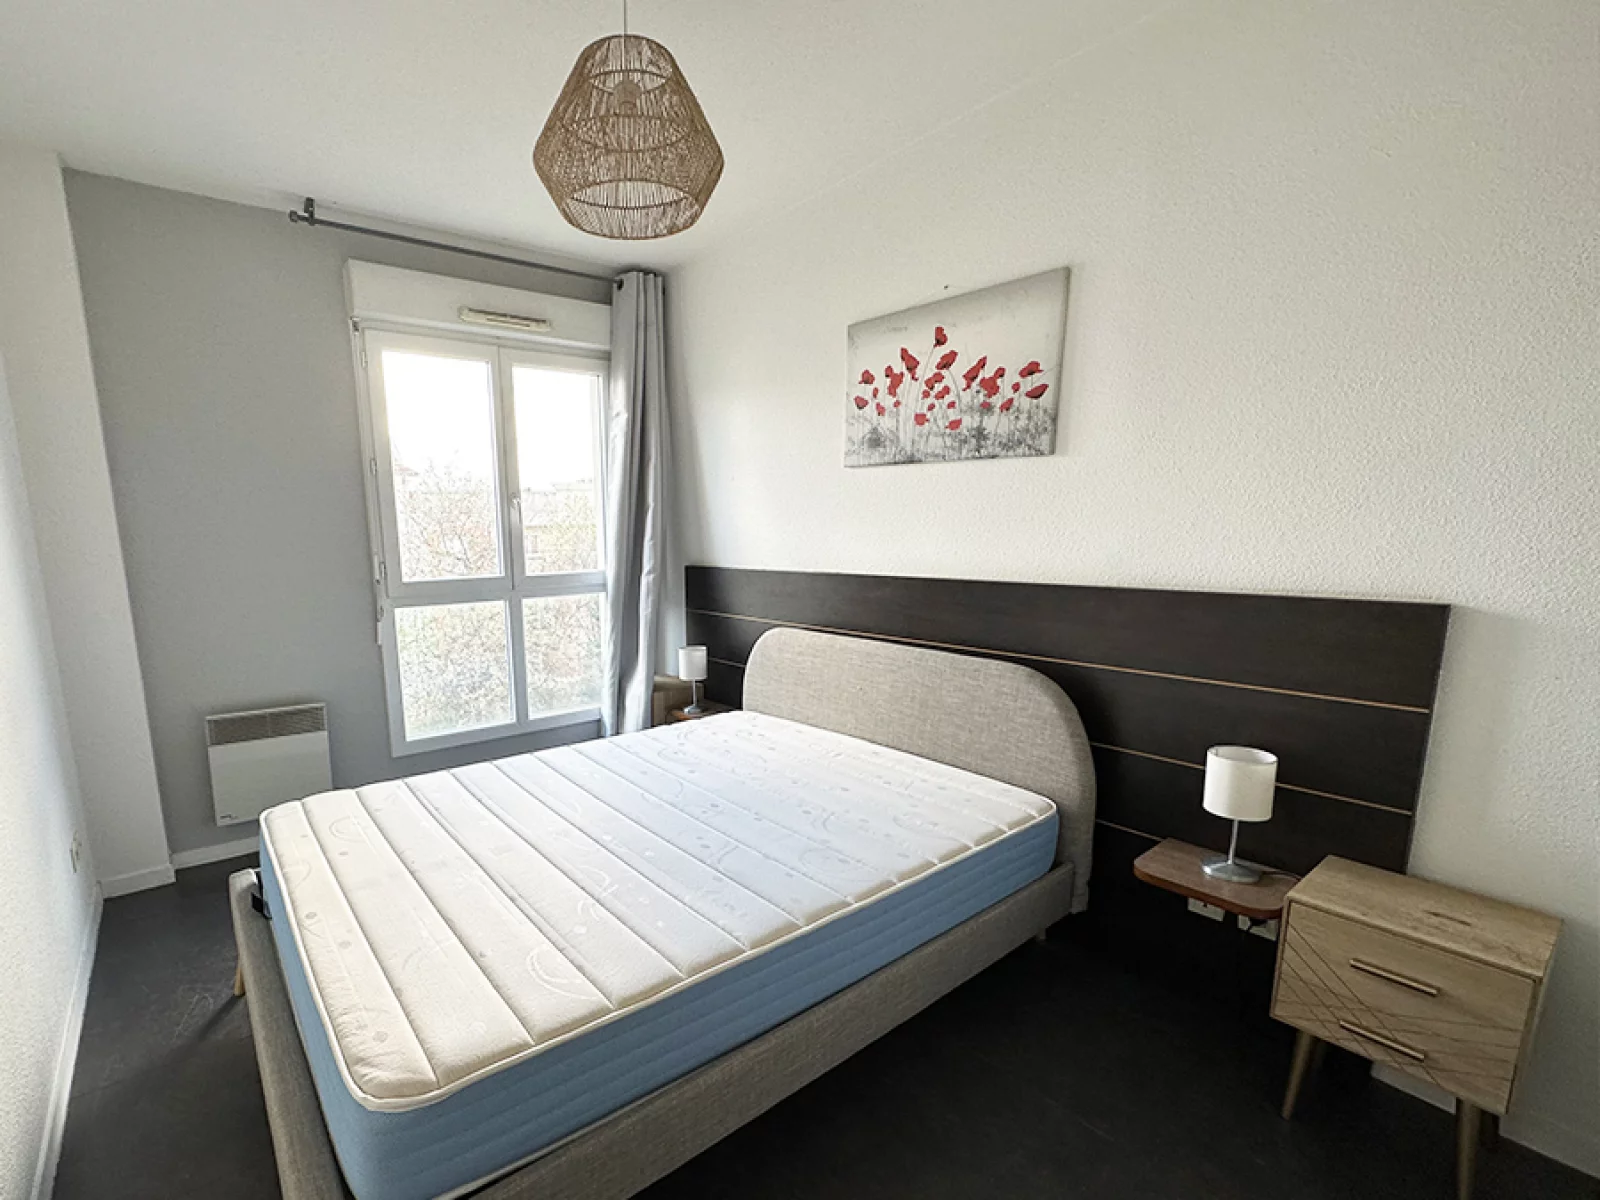 Location appartement meublé duplex 3 pièces 69m² (Paris est - Bry s/ Marne)